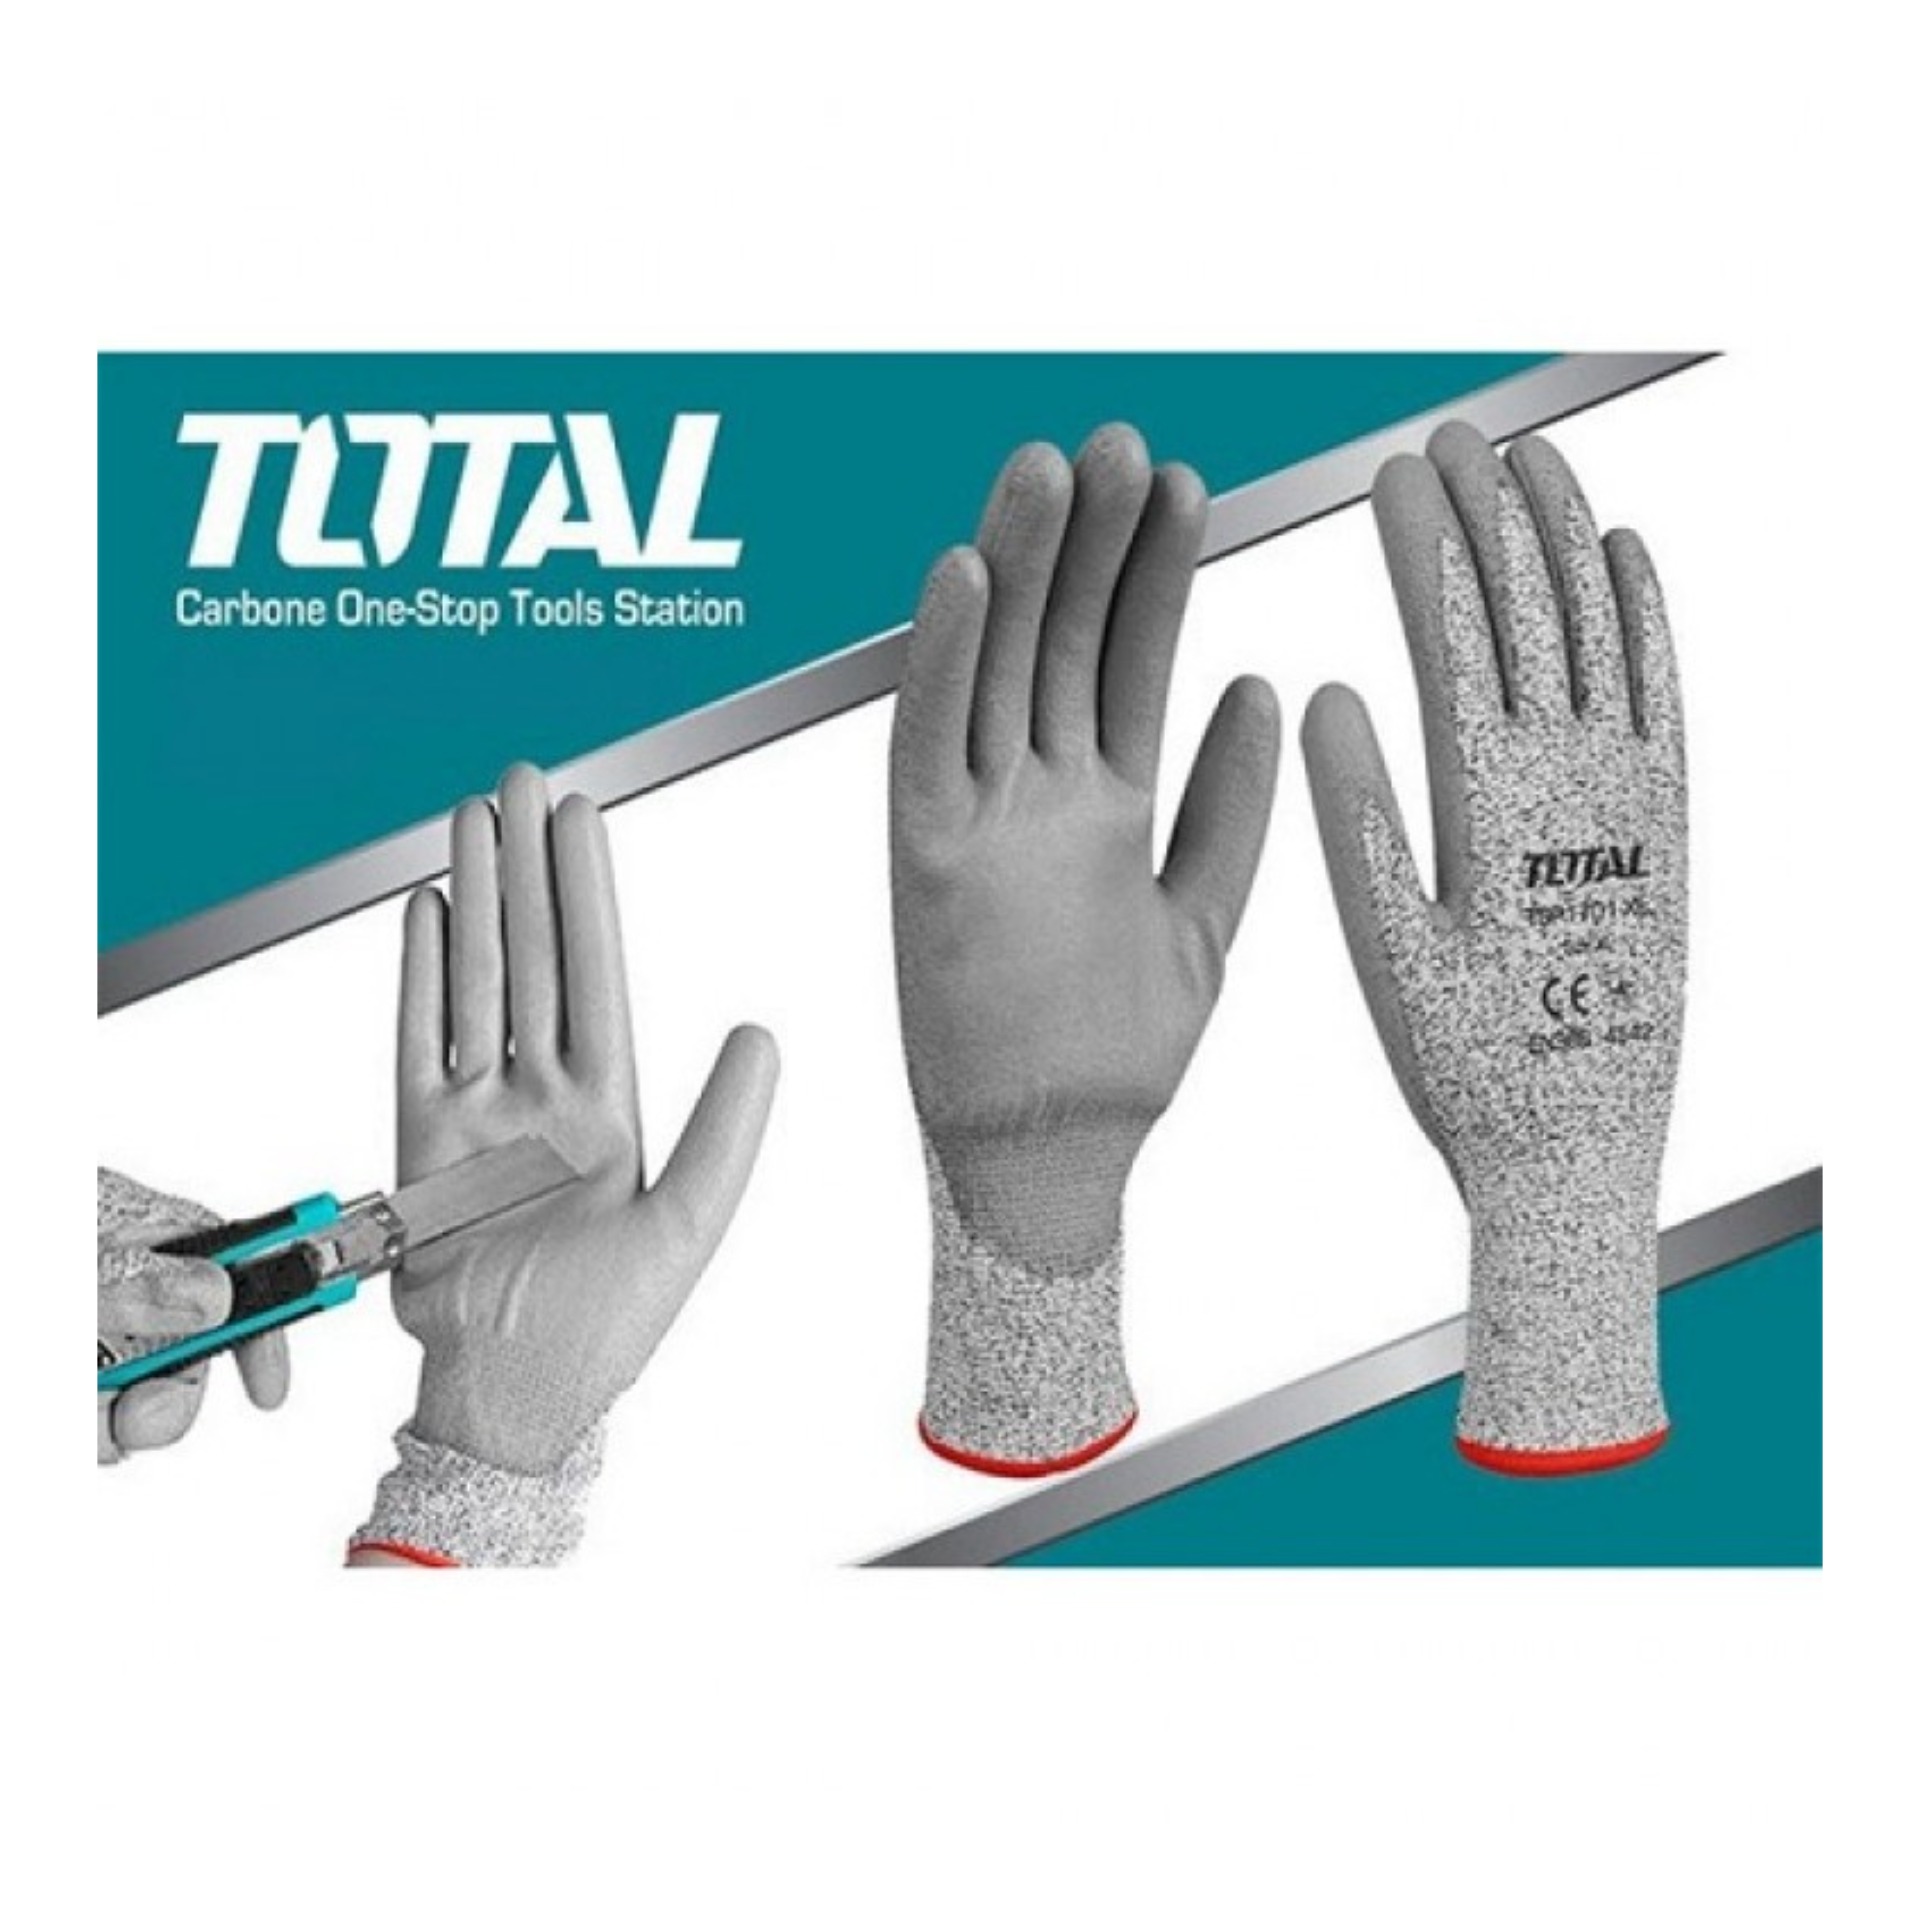 TSP1701-XL Cut-resistance Gloves